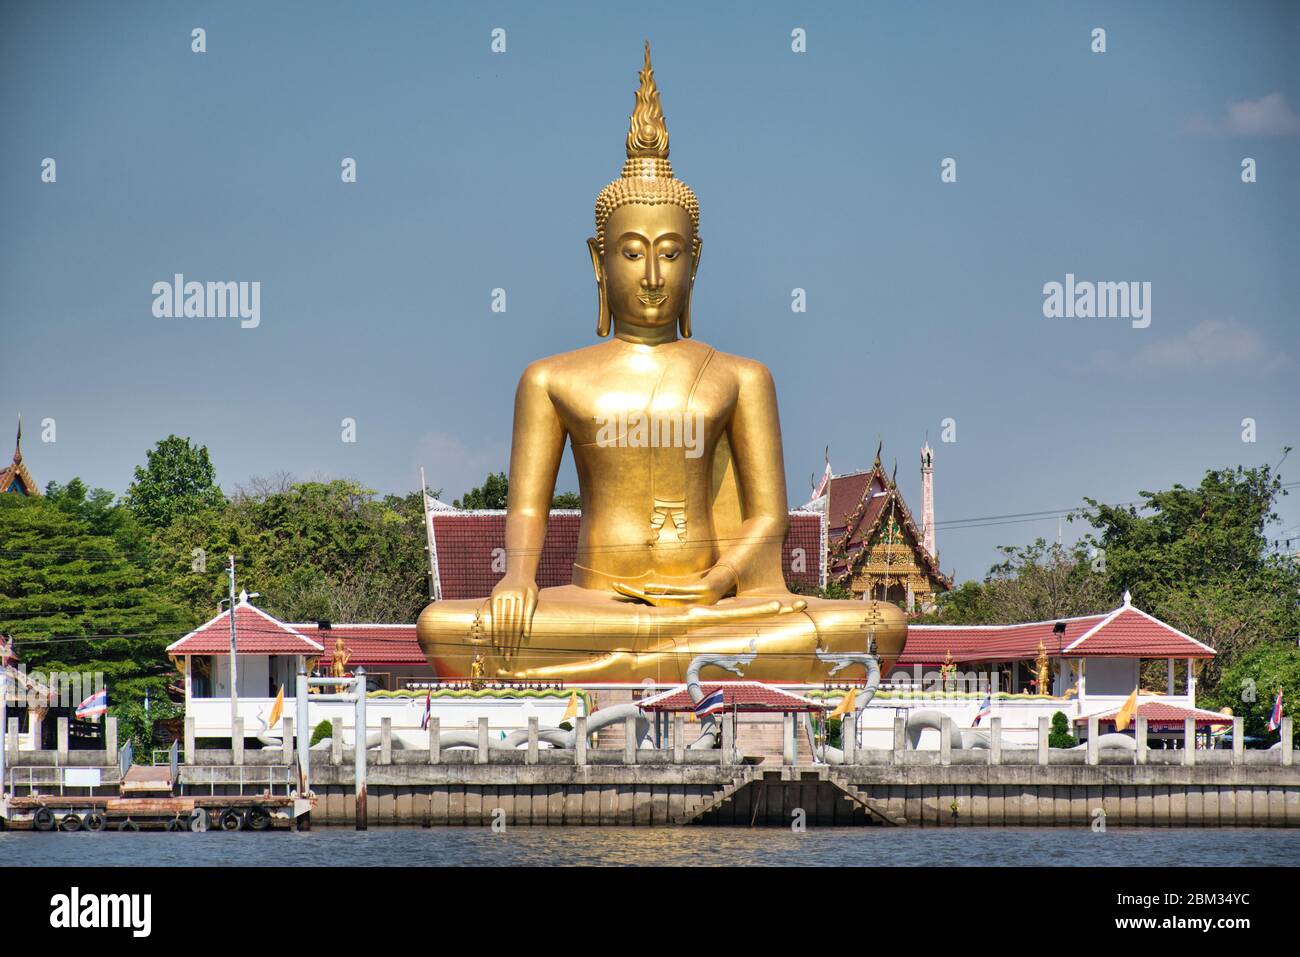 Un Buddha d'oro gigante in atteggiamento Maravijaya è un atteggiamento di Buddha in arte tailandese di cui il Buddha seduto sta mettendo la sua mano nella posizione relax Foto Stock